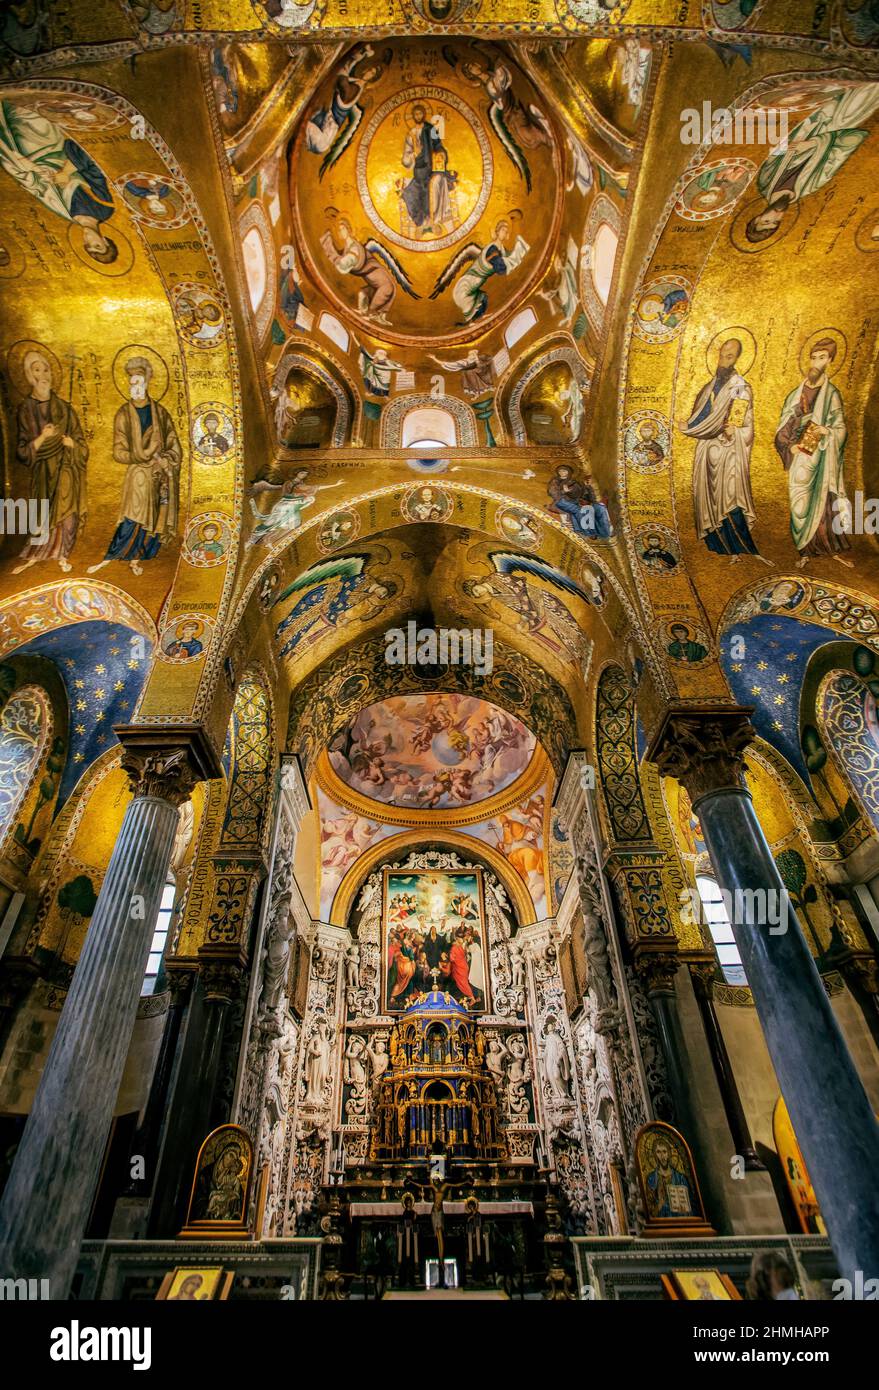 Intérieur avec mosaïques d'or de l'église de Santa Maria dell'Ammiraglio (église Admiral), Palerme, Sicile, Italie Banque D'Images